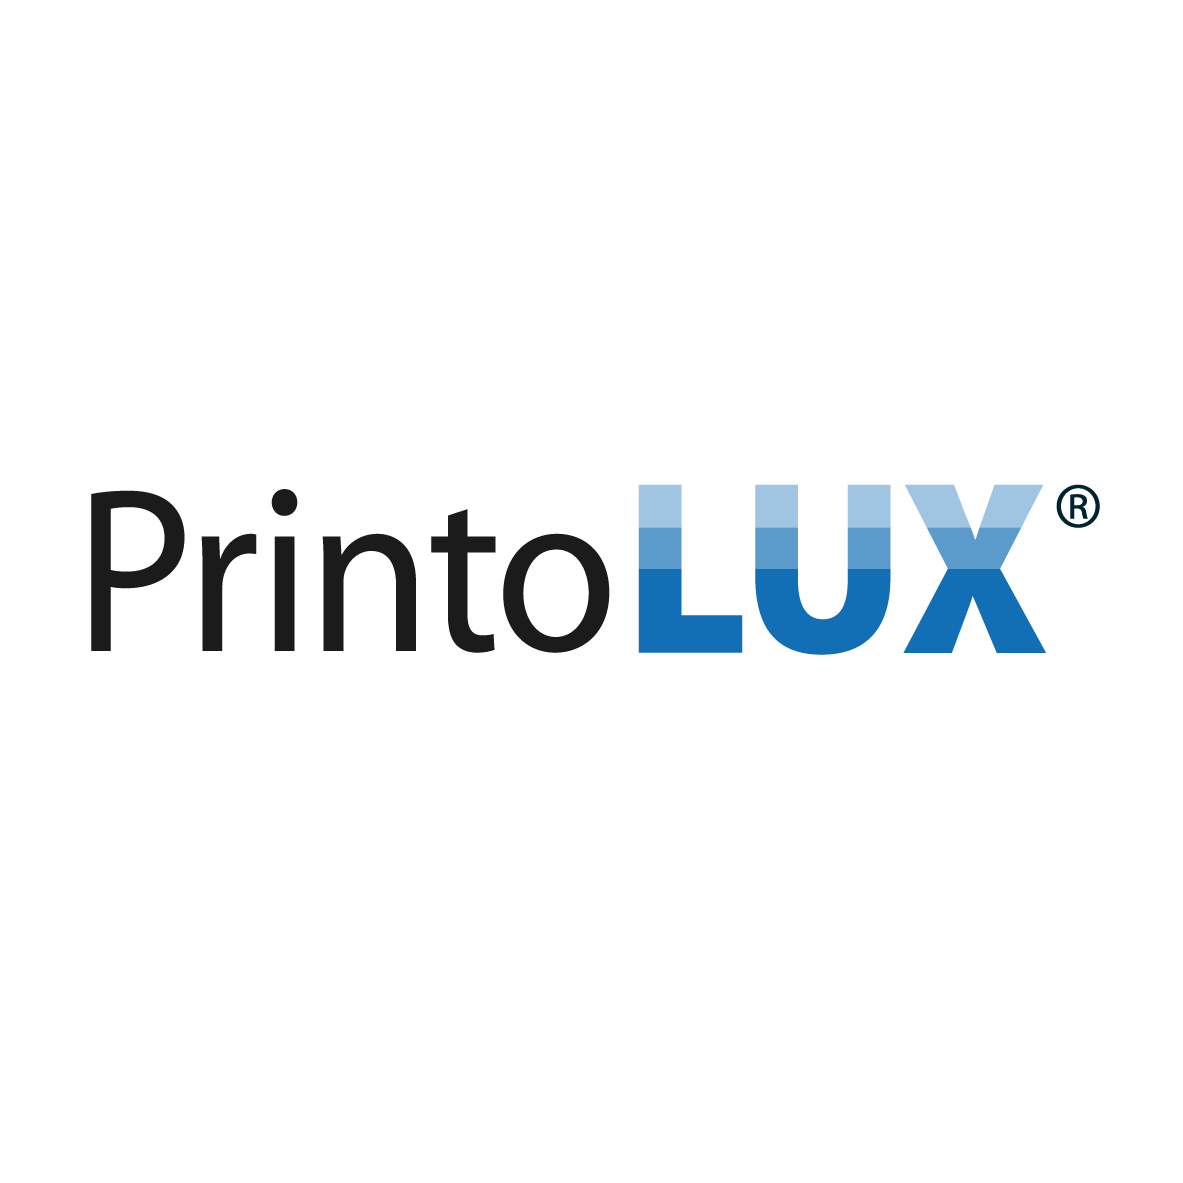 Kabelkennzeichnung Hersteller PrintoLUX GmbH